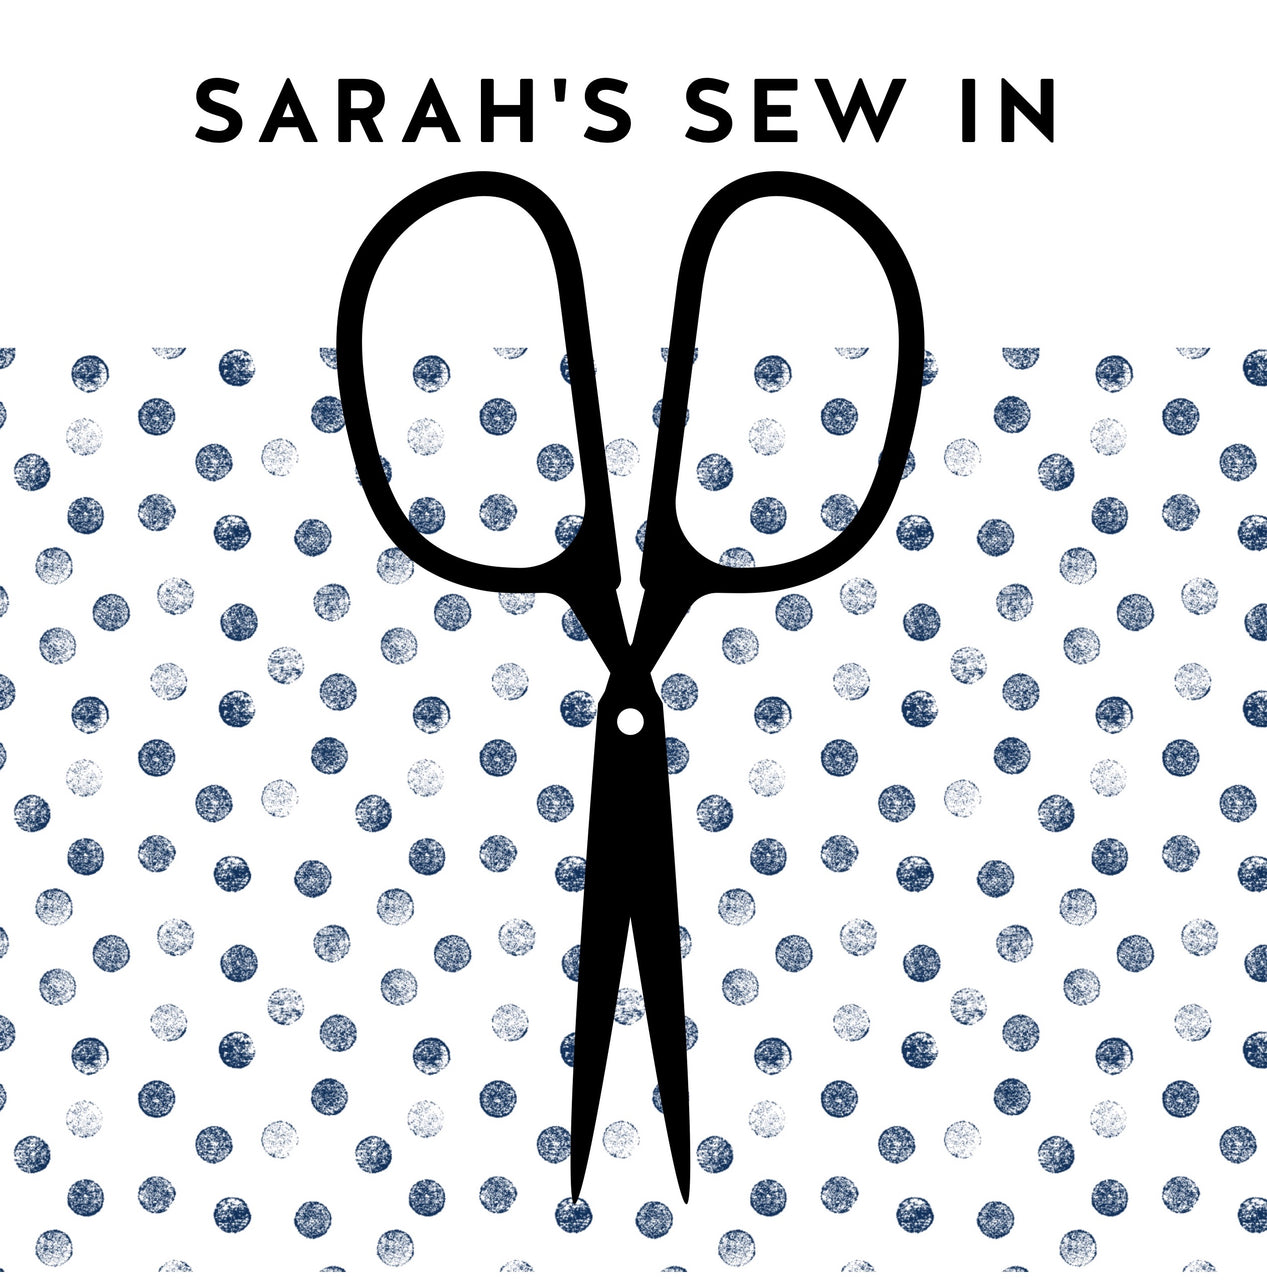 Sarah's Sew In